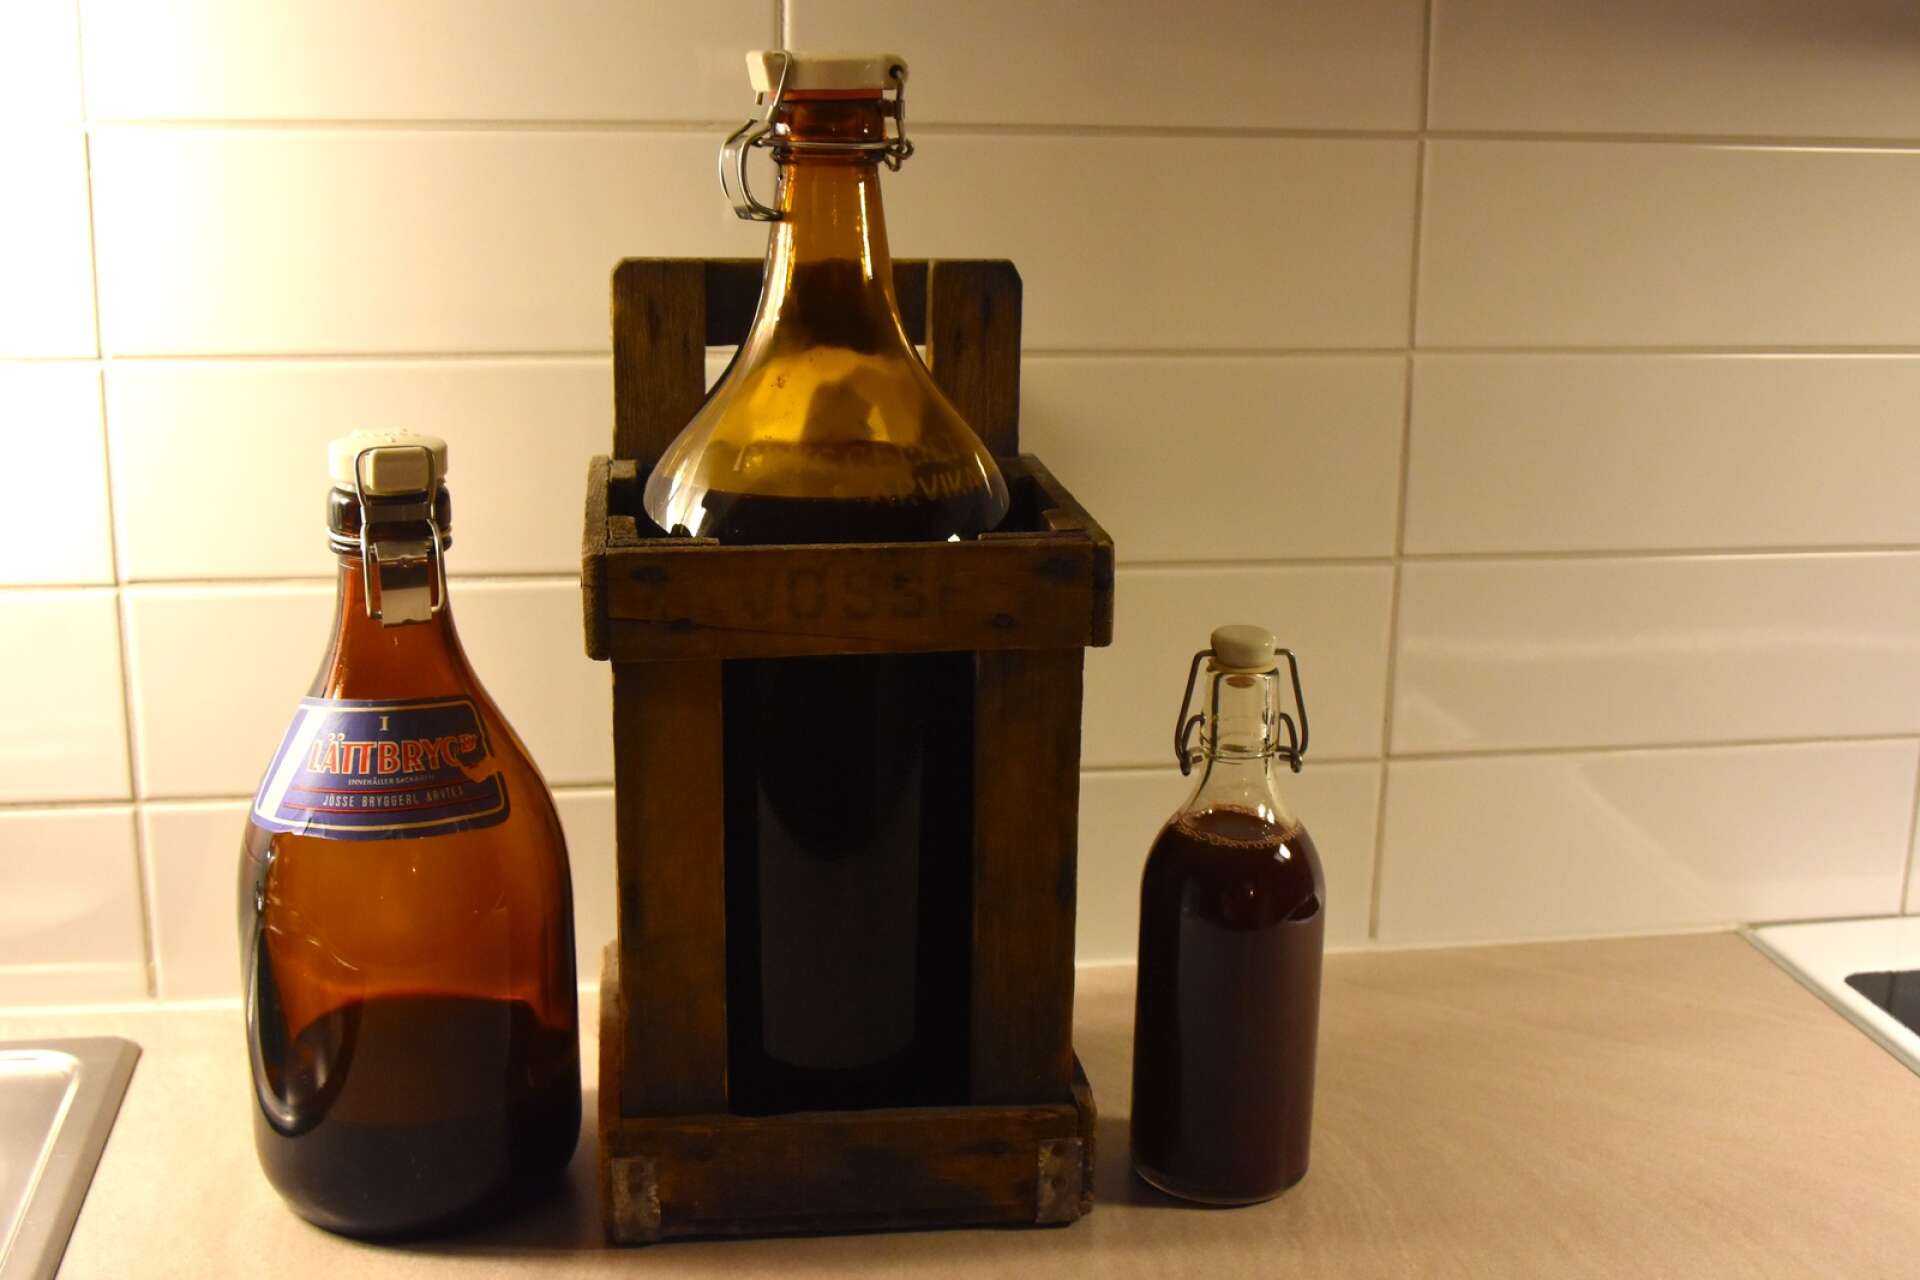 Intresset för lokala varor och hantverk avspeglar sig i valet av flaskor för egengjorda drycker.